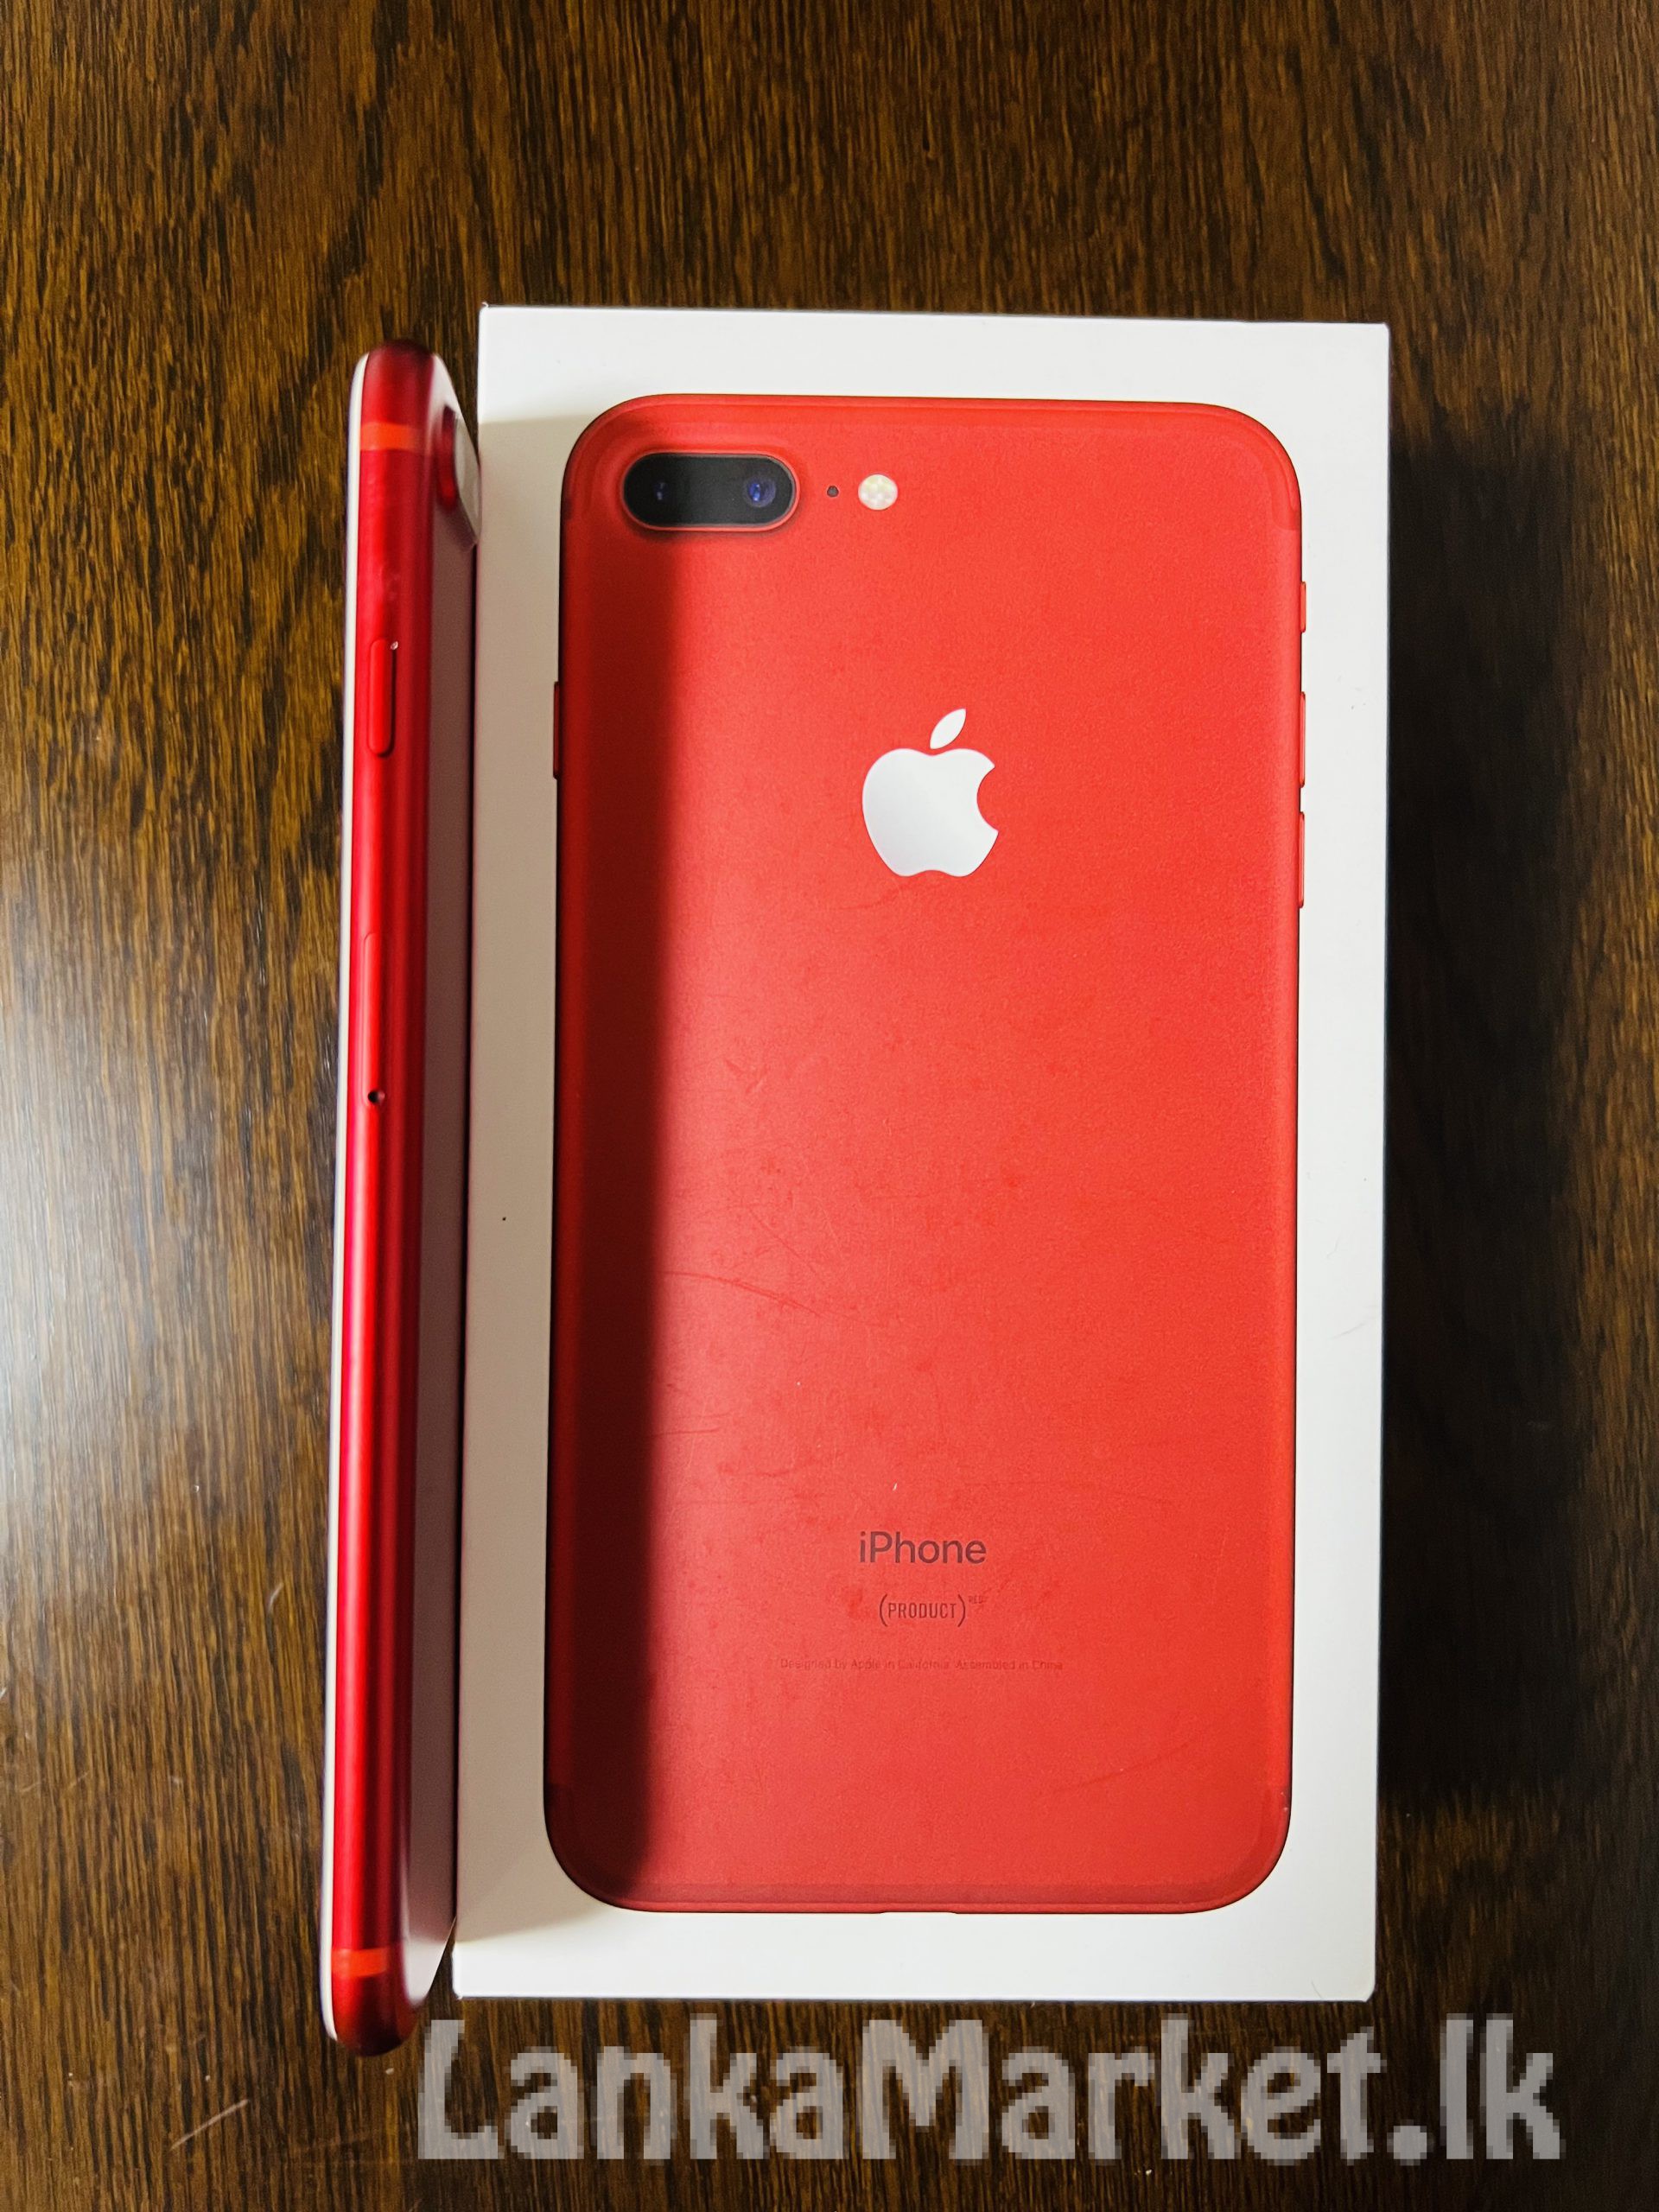 iPhone 7 Plus red